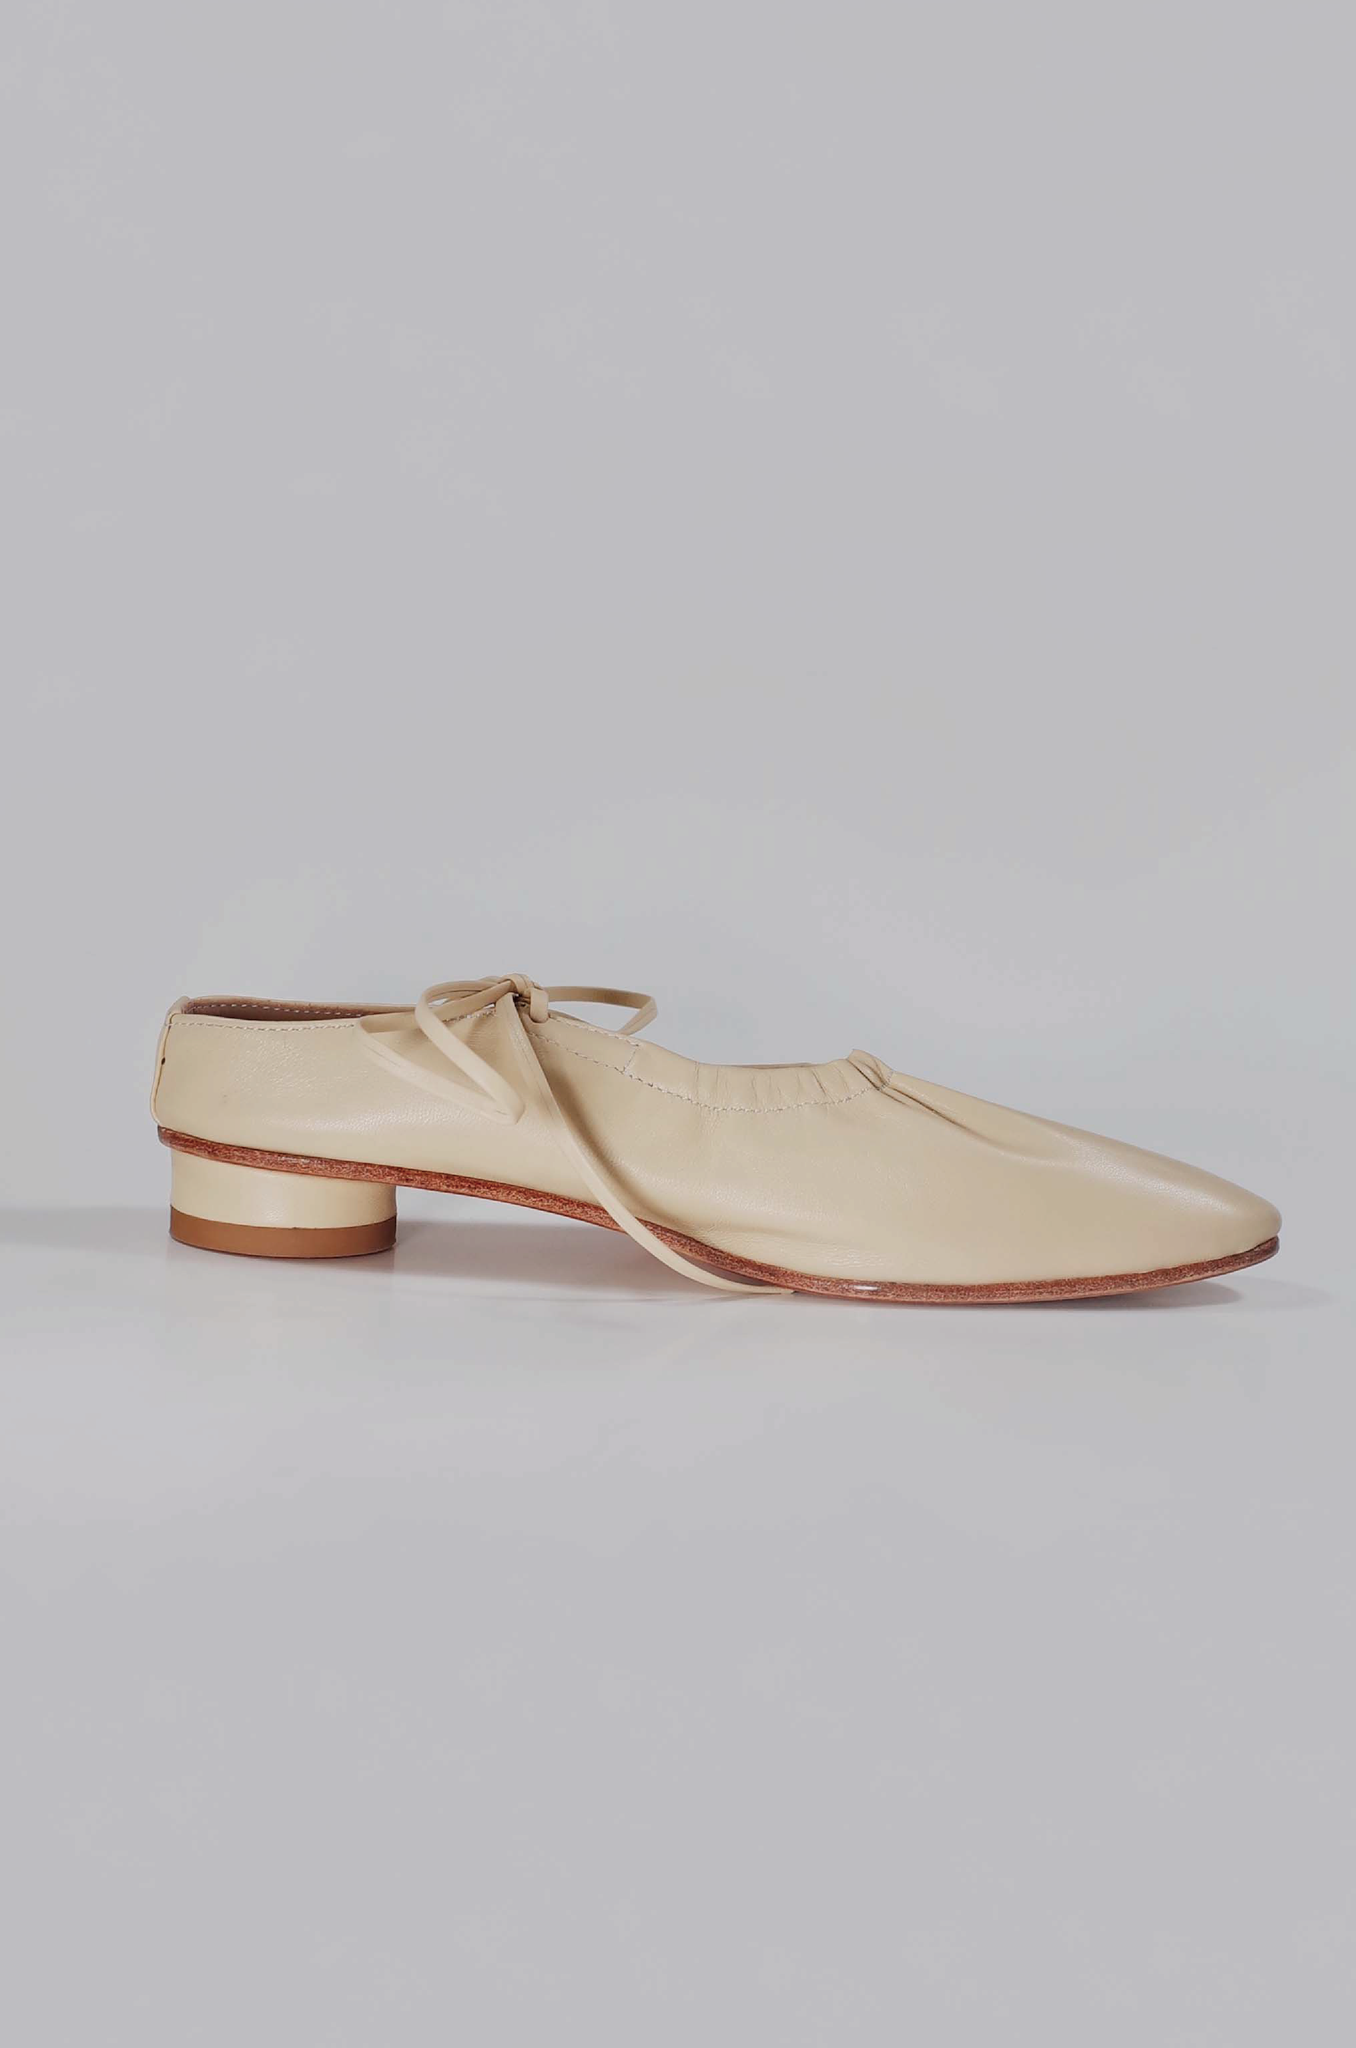 ・予約商品・Craftsman Made Leather100% Ballet Shoes (Naples Yellow)